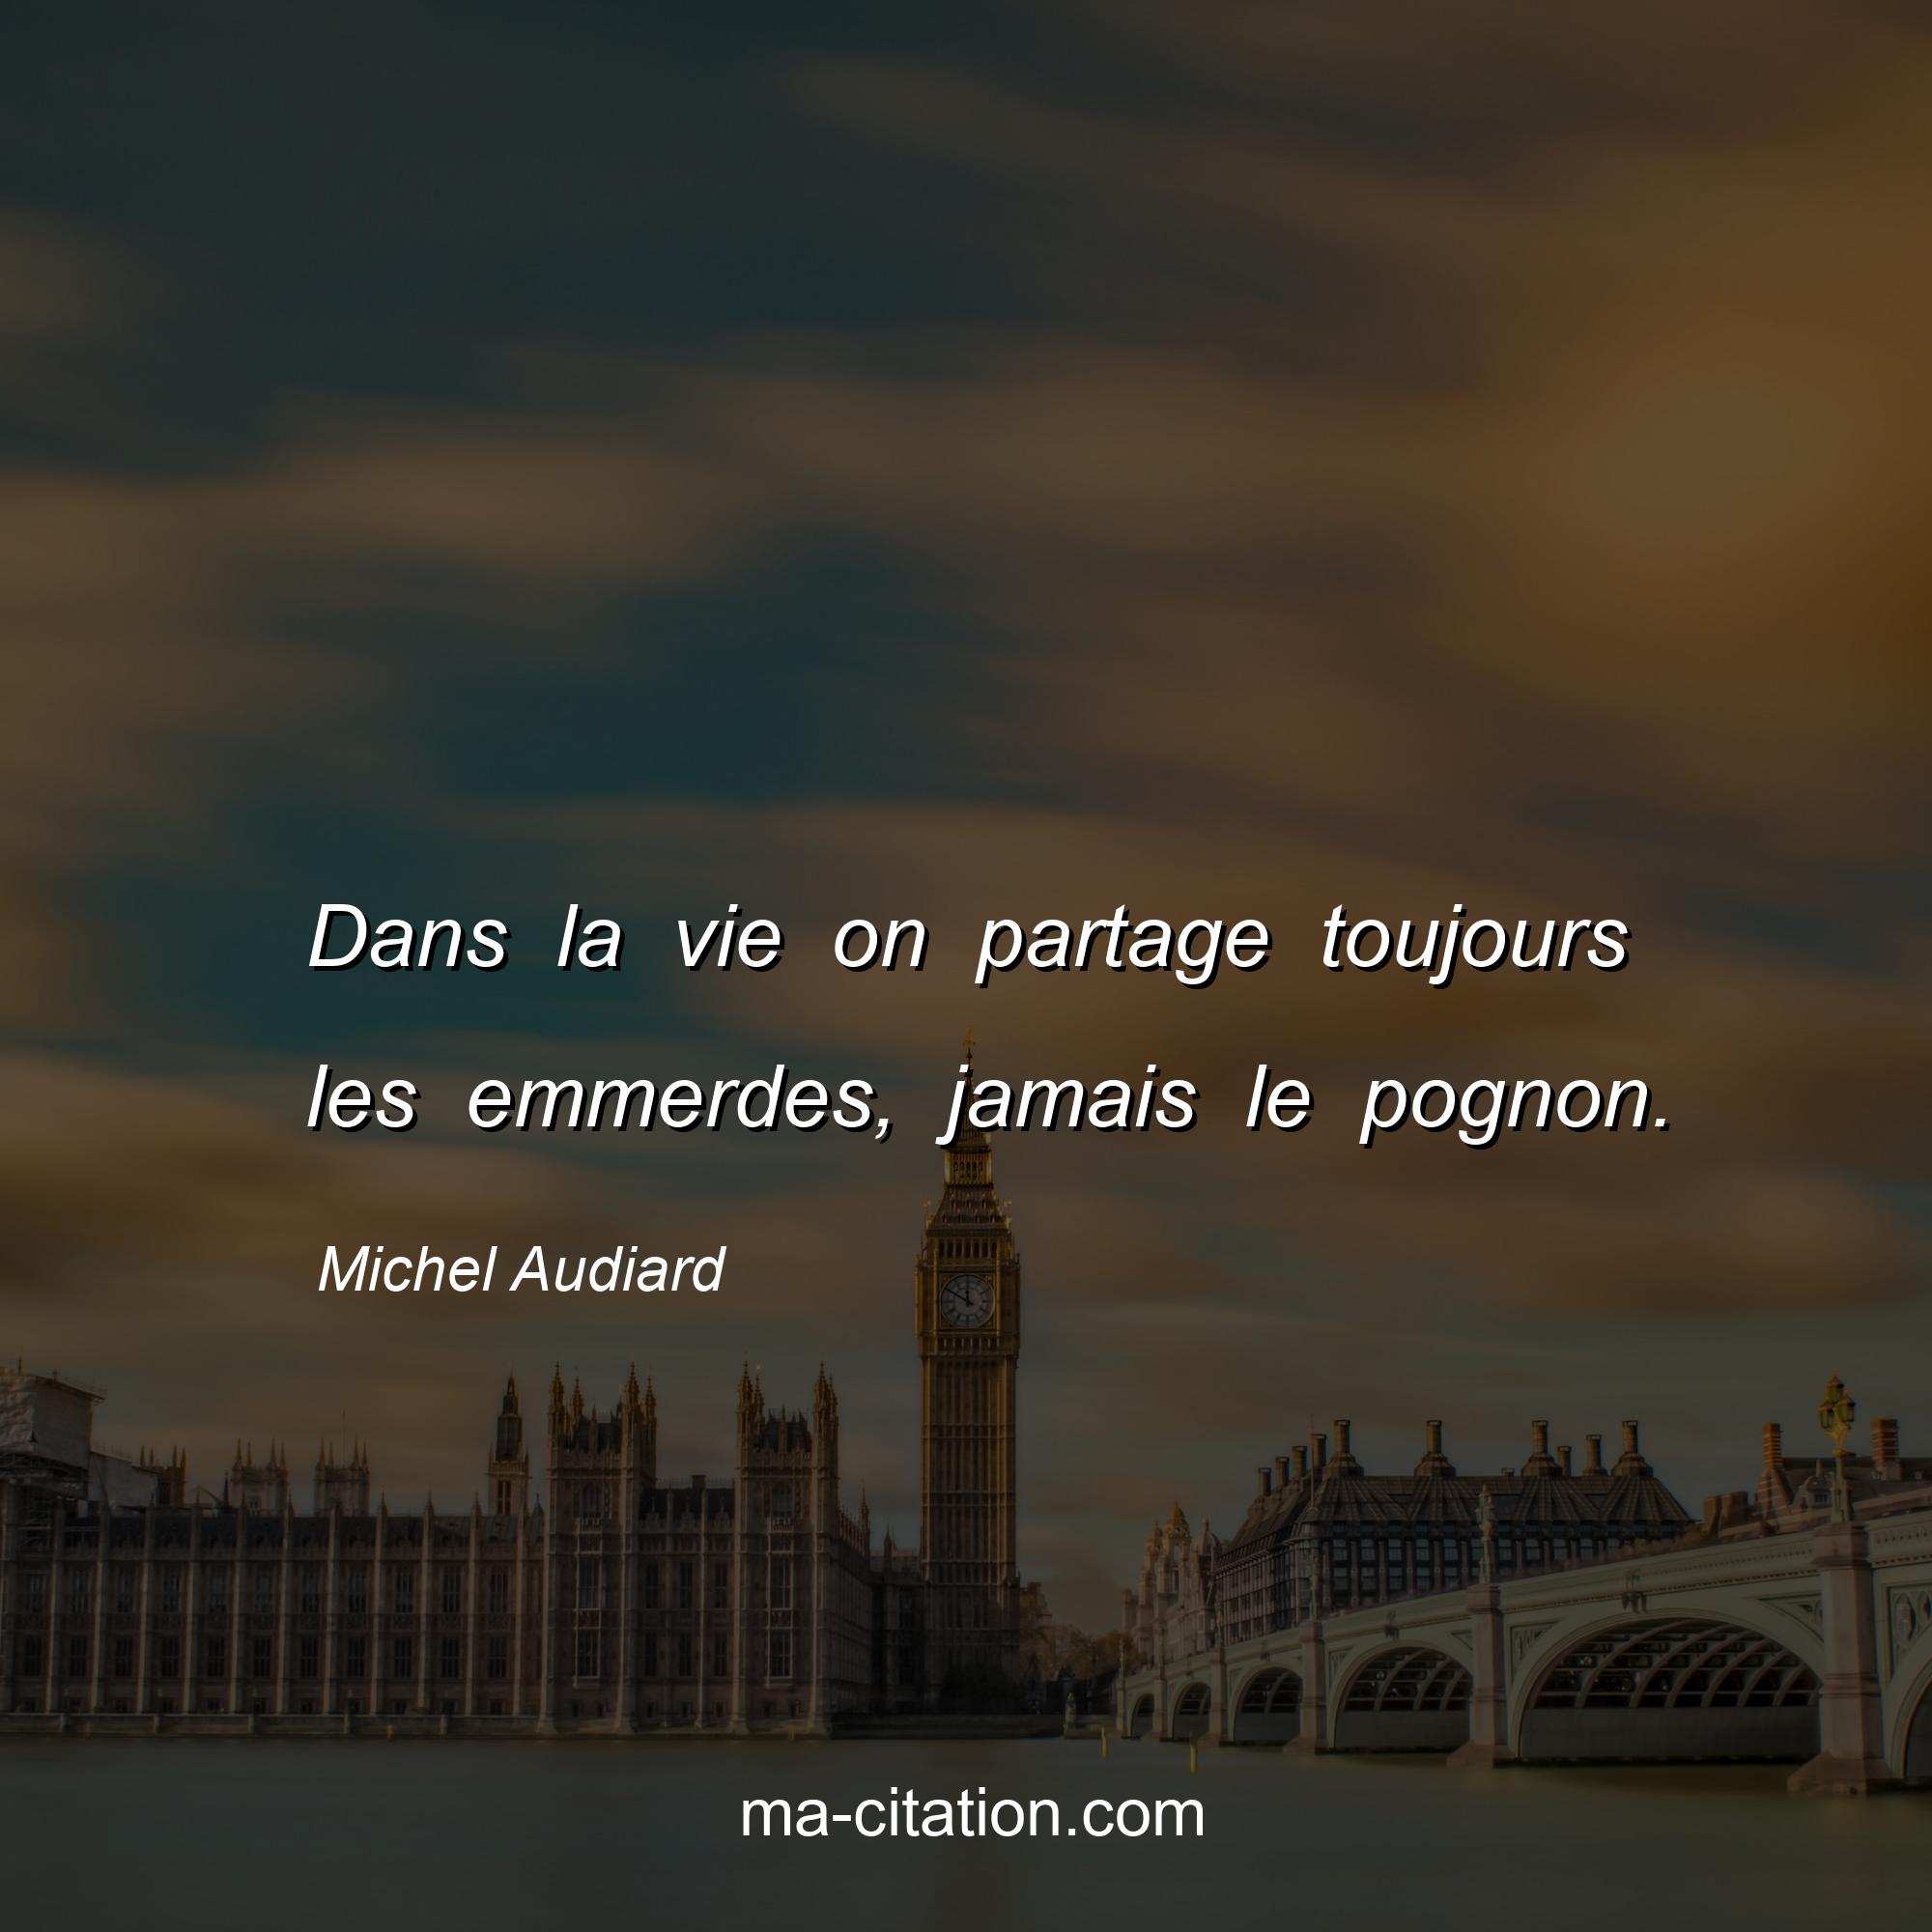 Michel Audiard : Dans la vie on partage toujours les emmerdes, jamais le pognon.